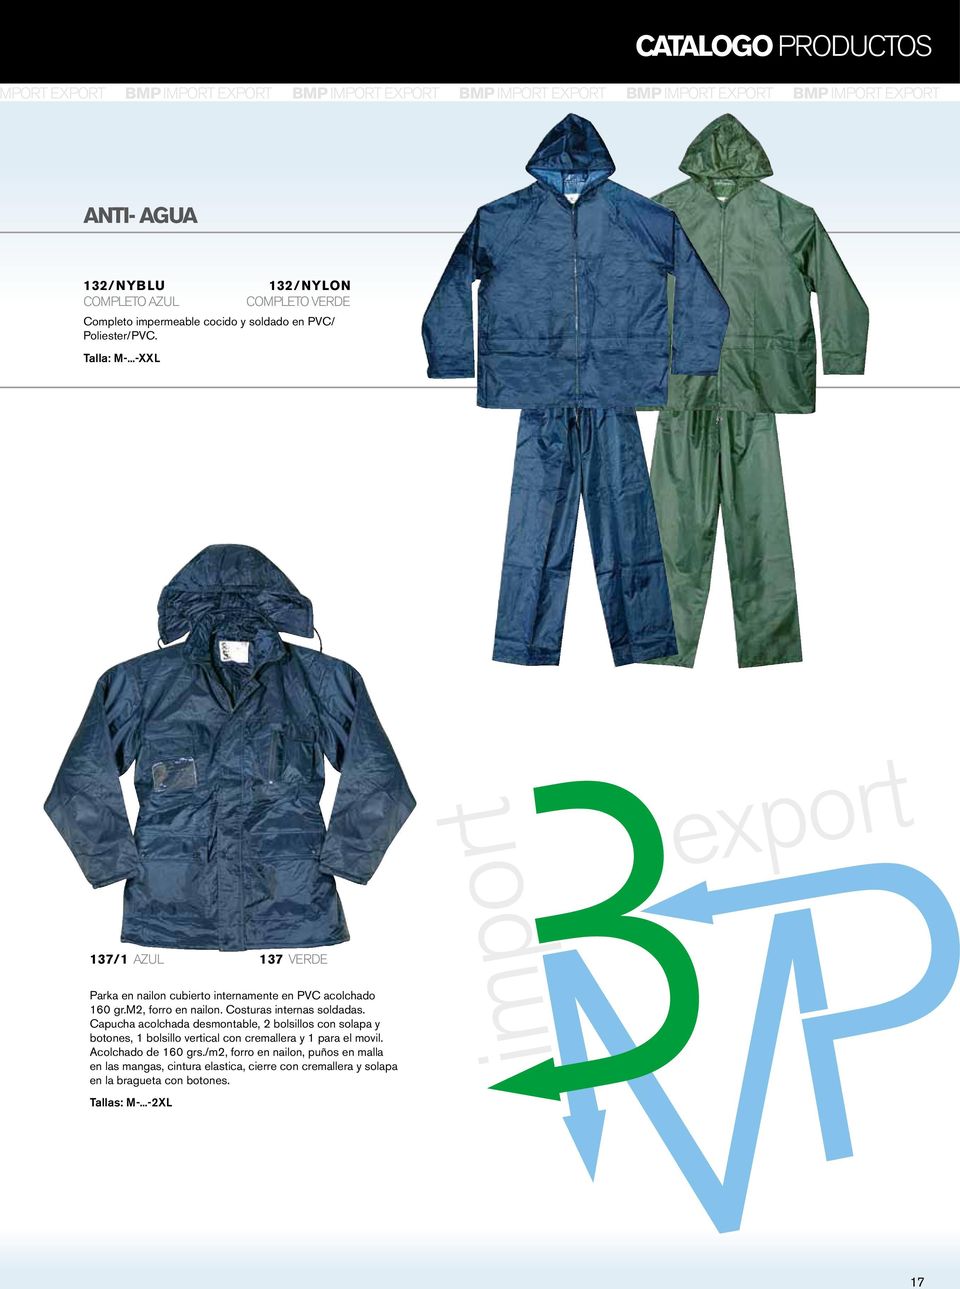 ..-XXL export 137/1 azul 137 verde Parka en nailon cubierto internamente en PVC acolchado 160 gr.m2, forro en nailon. Costuras internas soldadas.